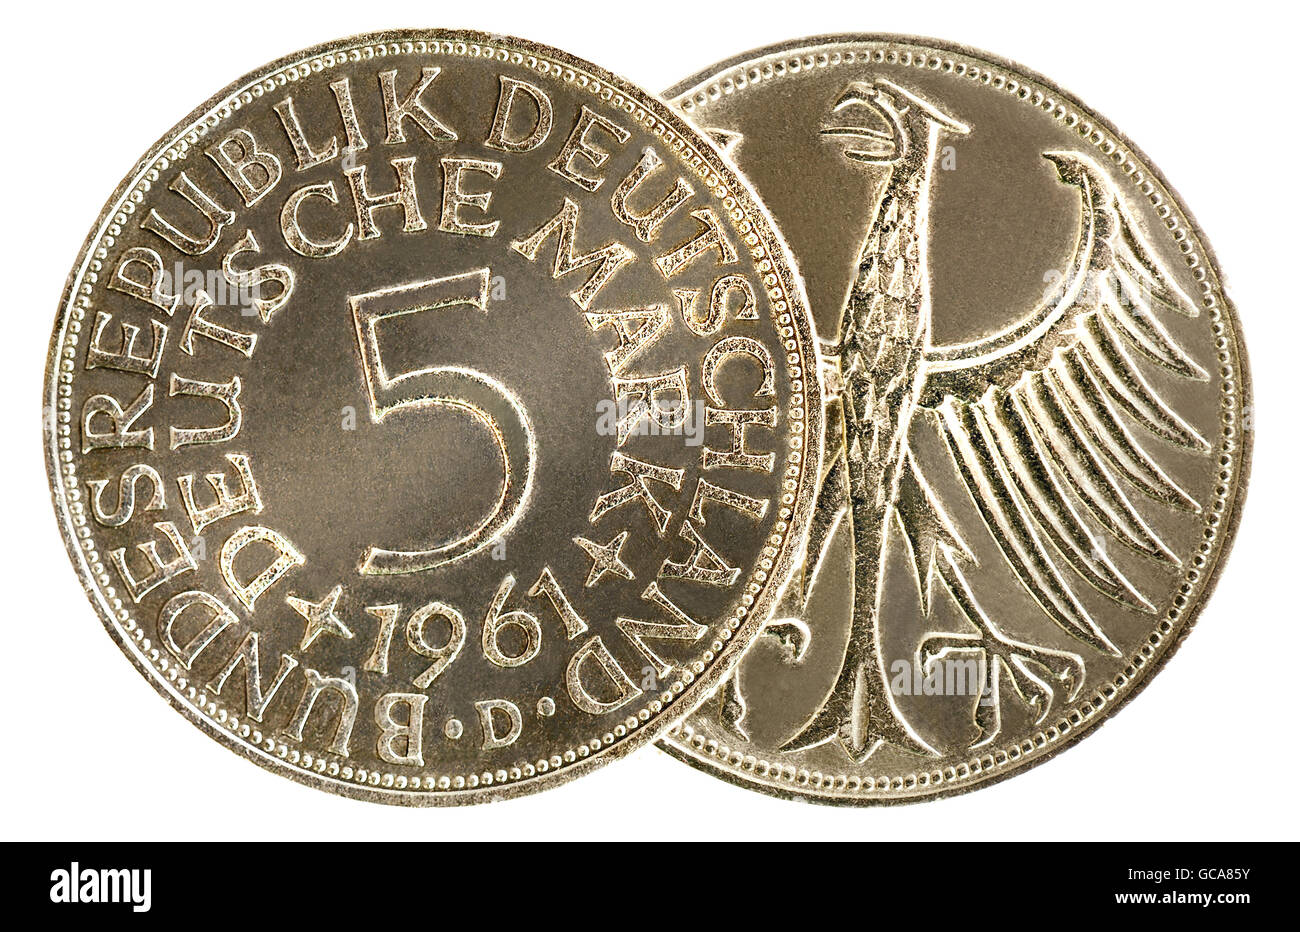 Monnaie / finances, pièces, Allemagne, pièce de 5-Mark, pièce avec un alliage de cuivre d'argent, lieu de minting: D Munich, Allemagne, 1961, droits additionnels-Clearences-non disponible Banque D'Images